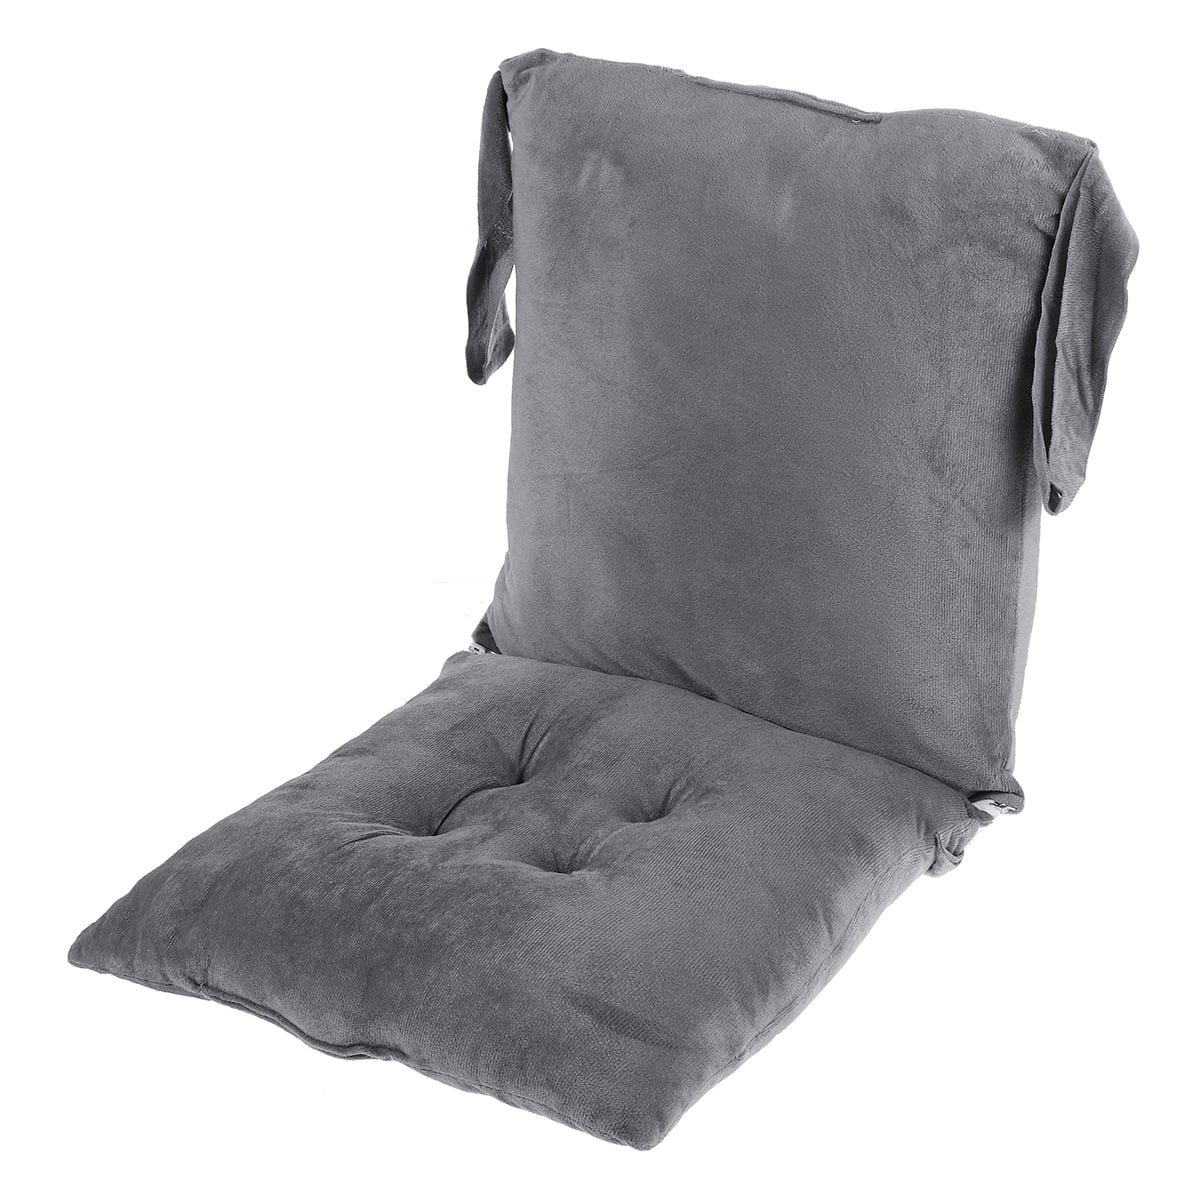 rocking chair cushions walmart canada